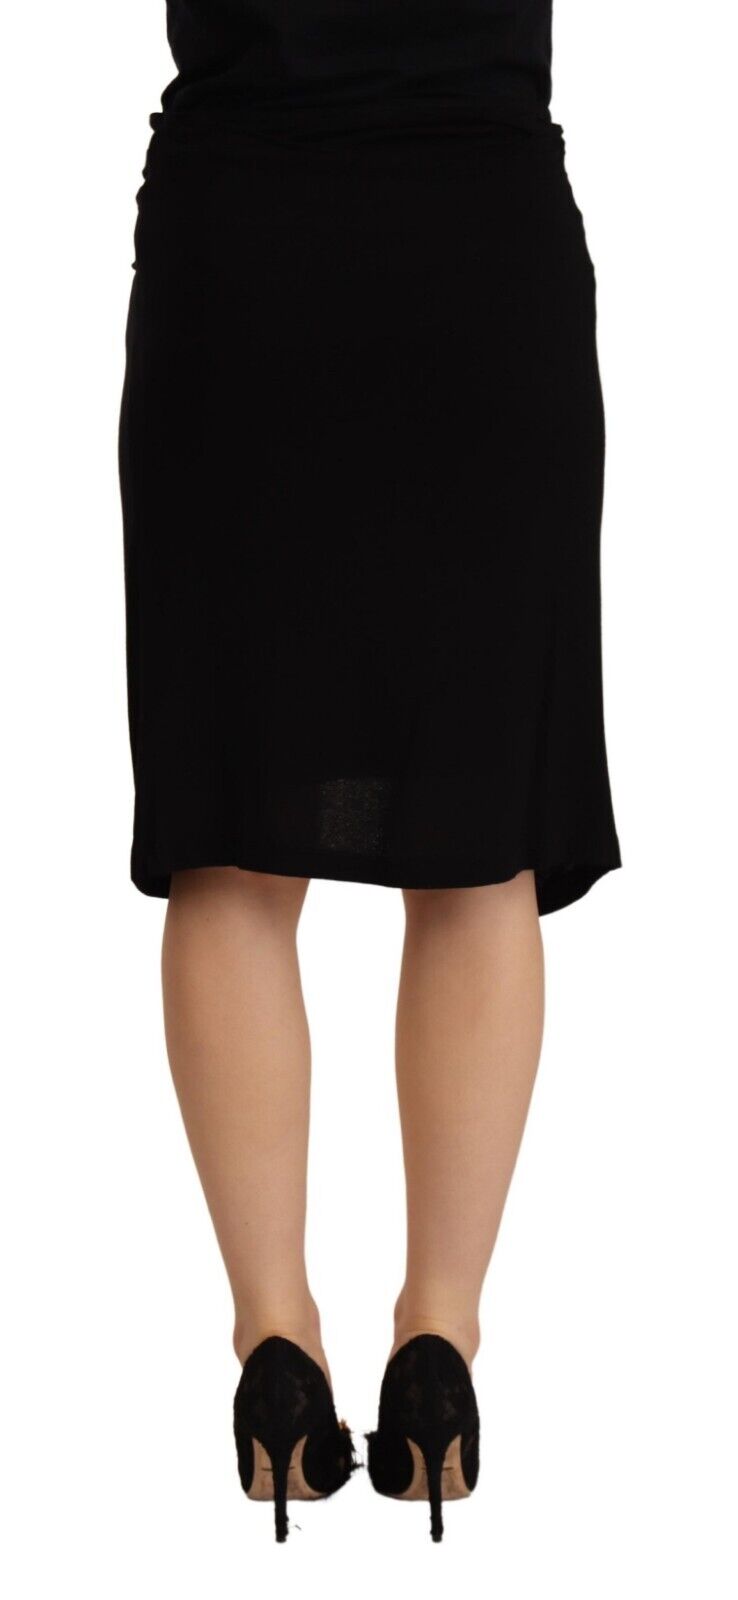 Black High Waist Pencil Knee Length Viscose Skirt